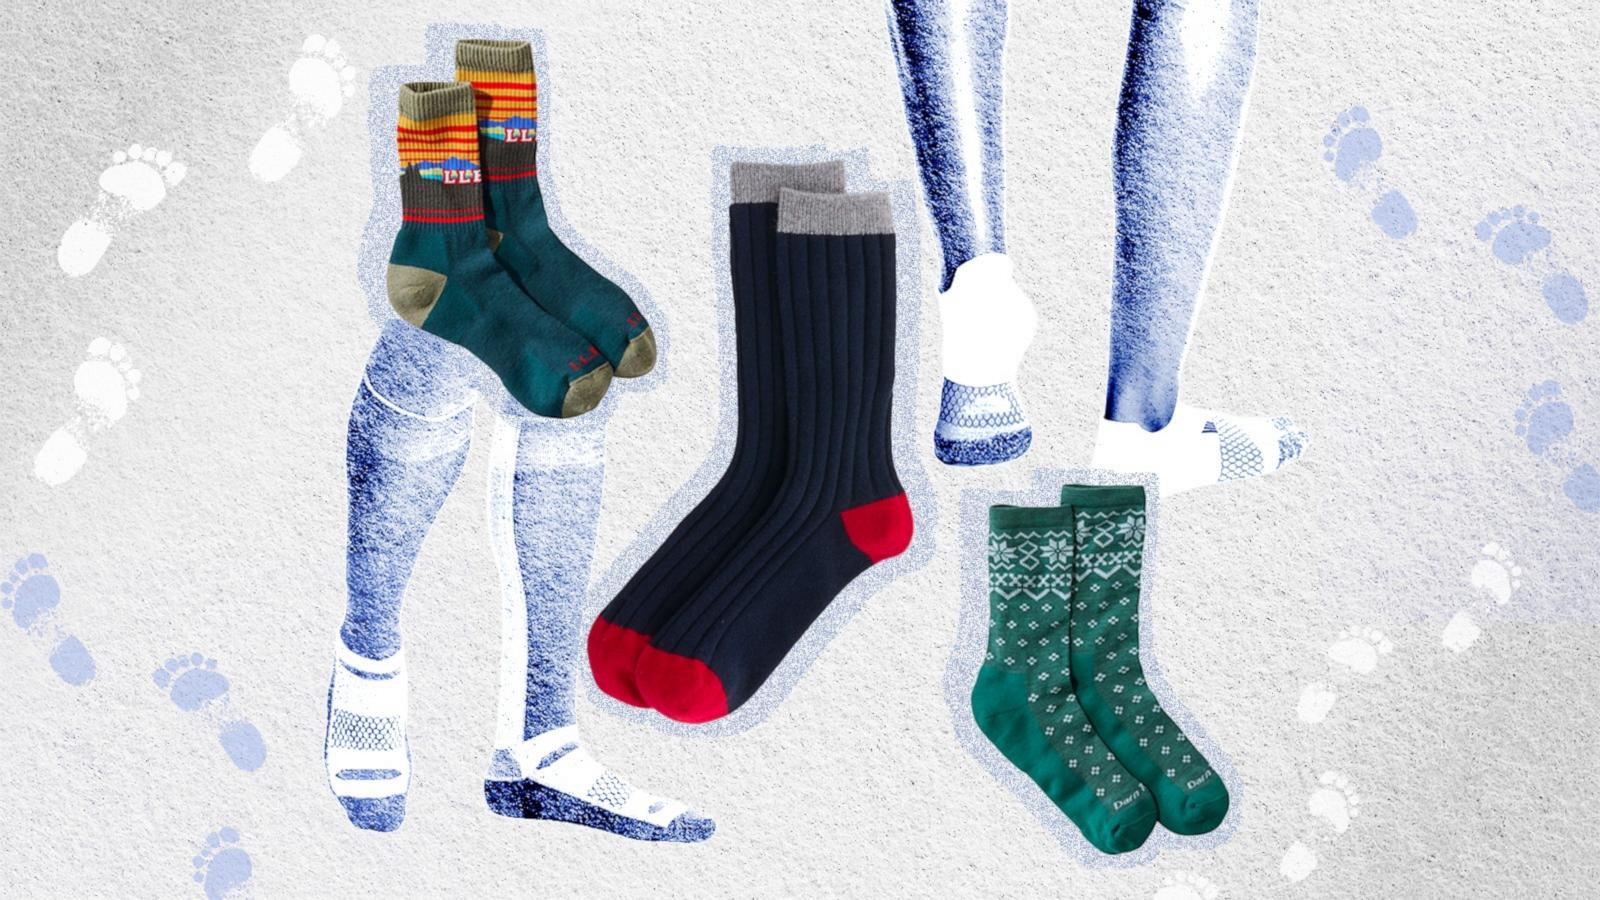 Buy Azue Fuzzy Socks for Women Winter Home Soft Cozy Warm